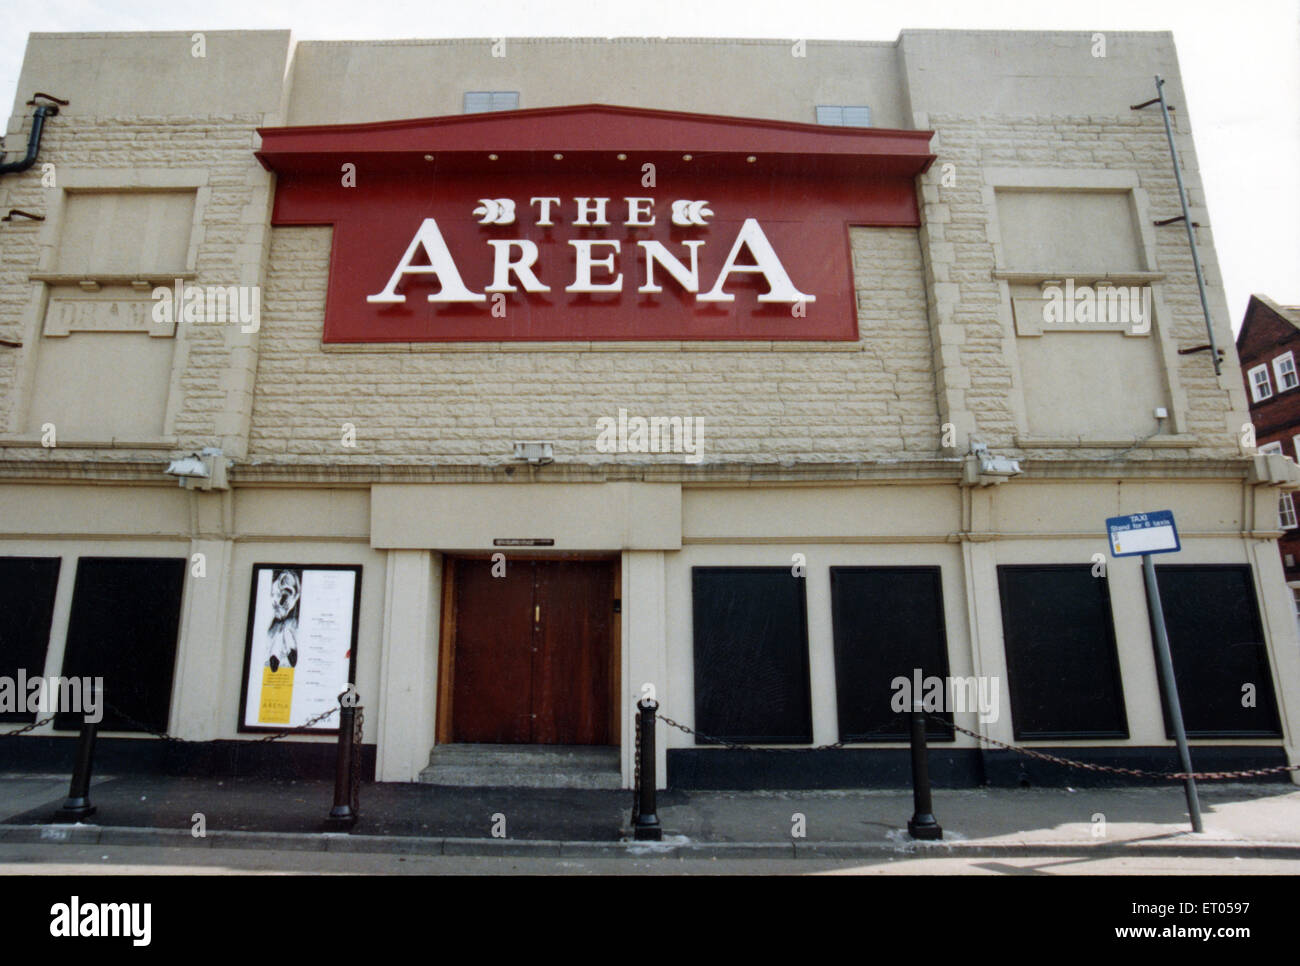 L'Arène de nuit, Middlesbrough. Circa 1990. Banque D'Images